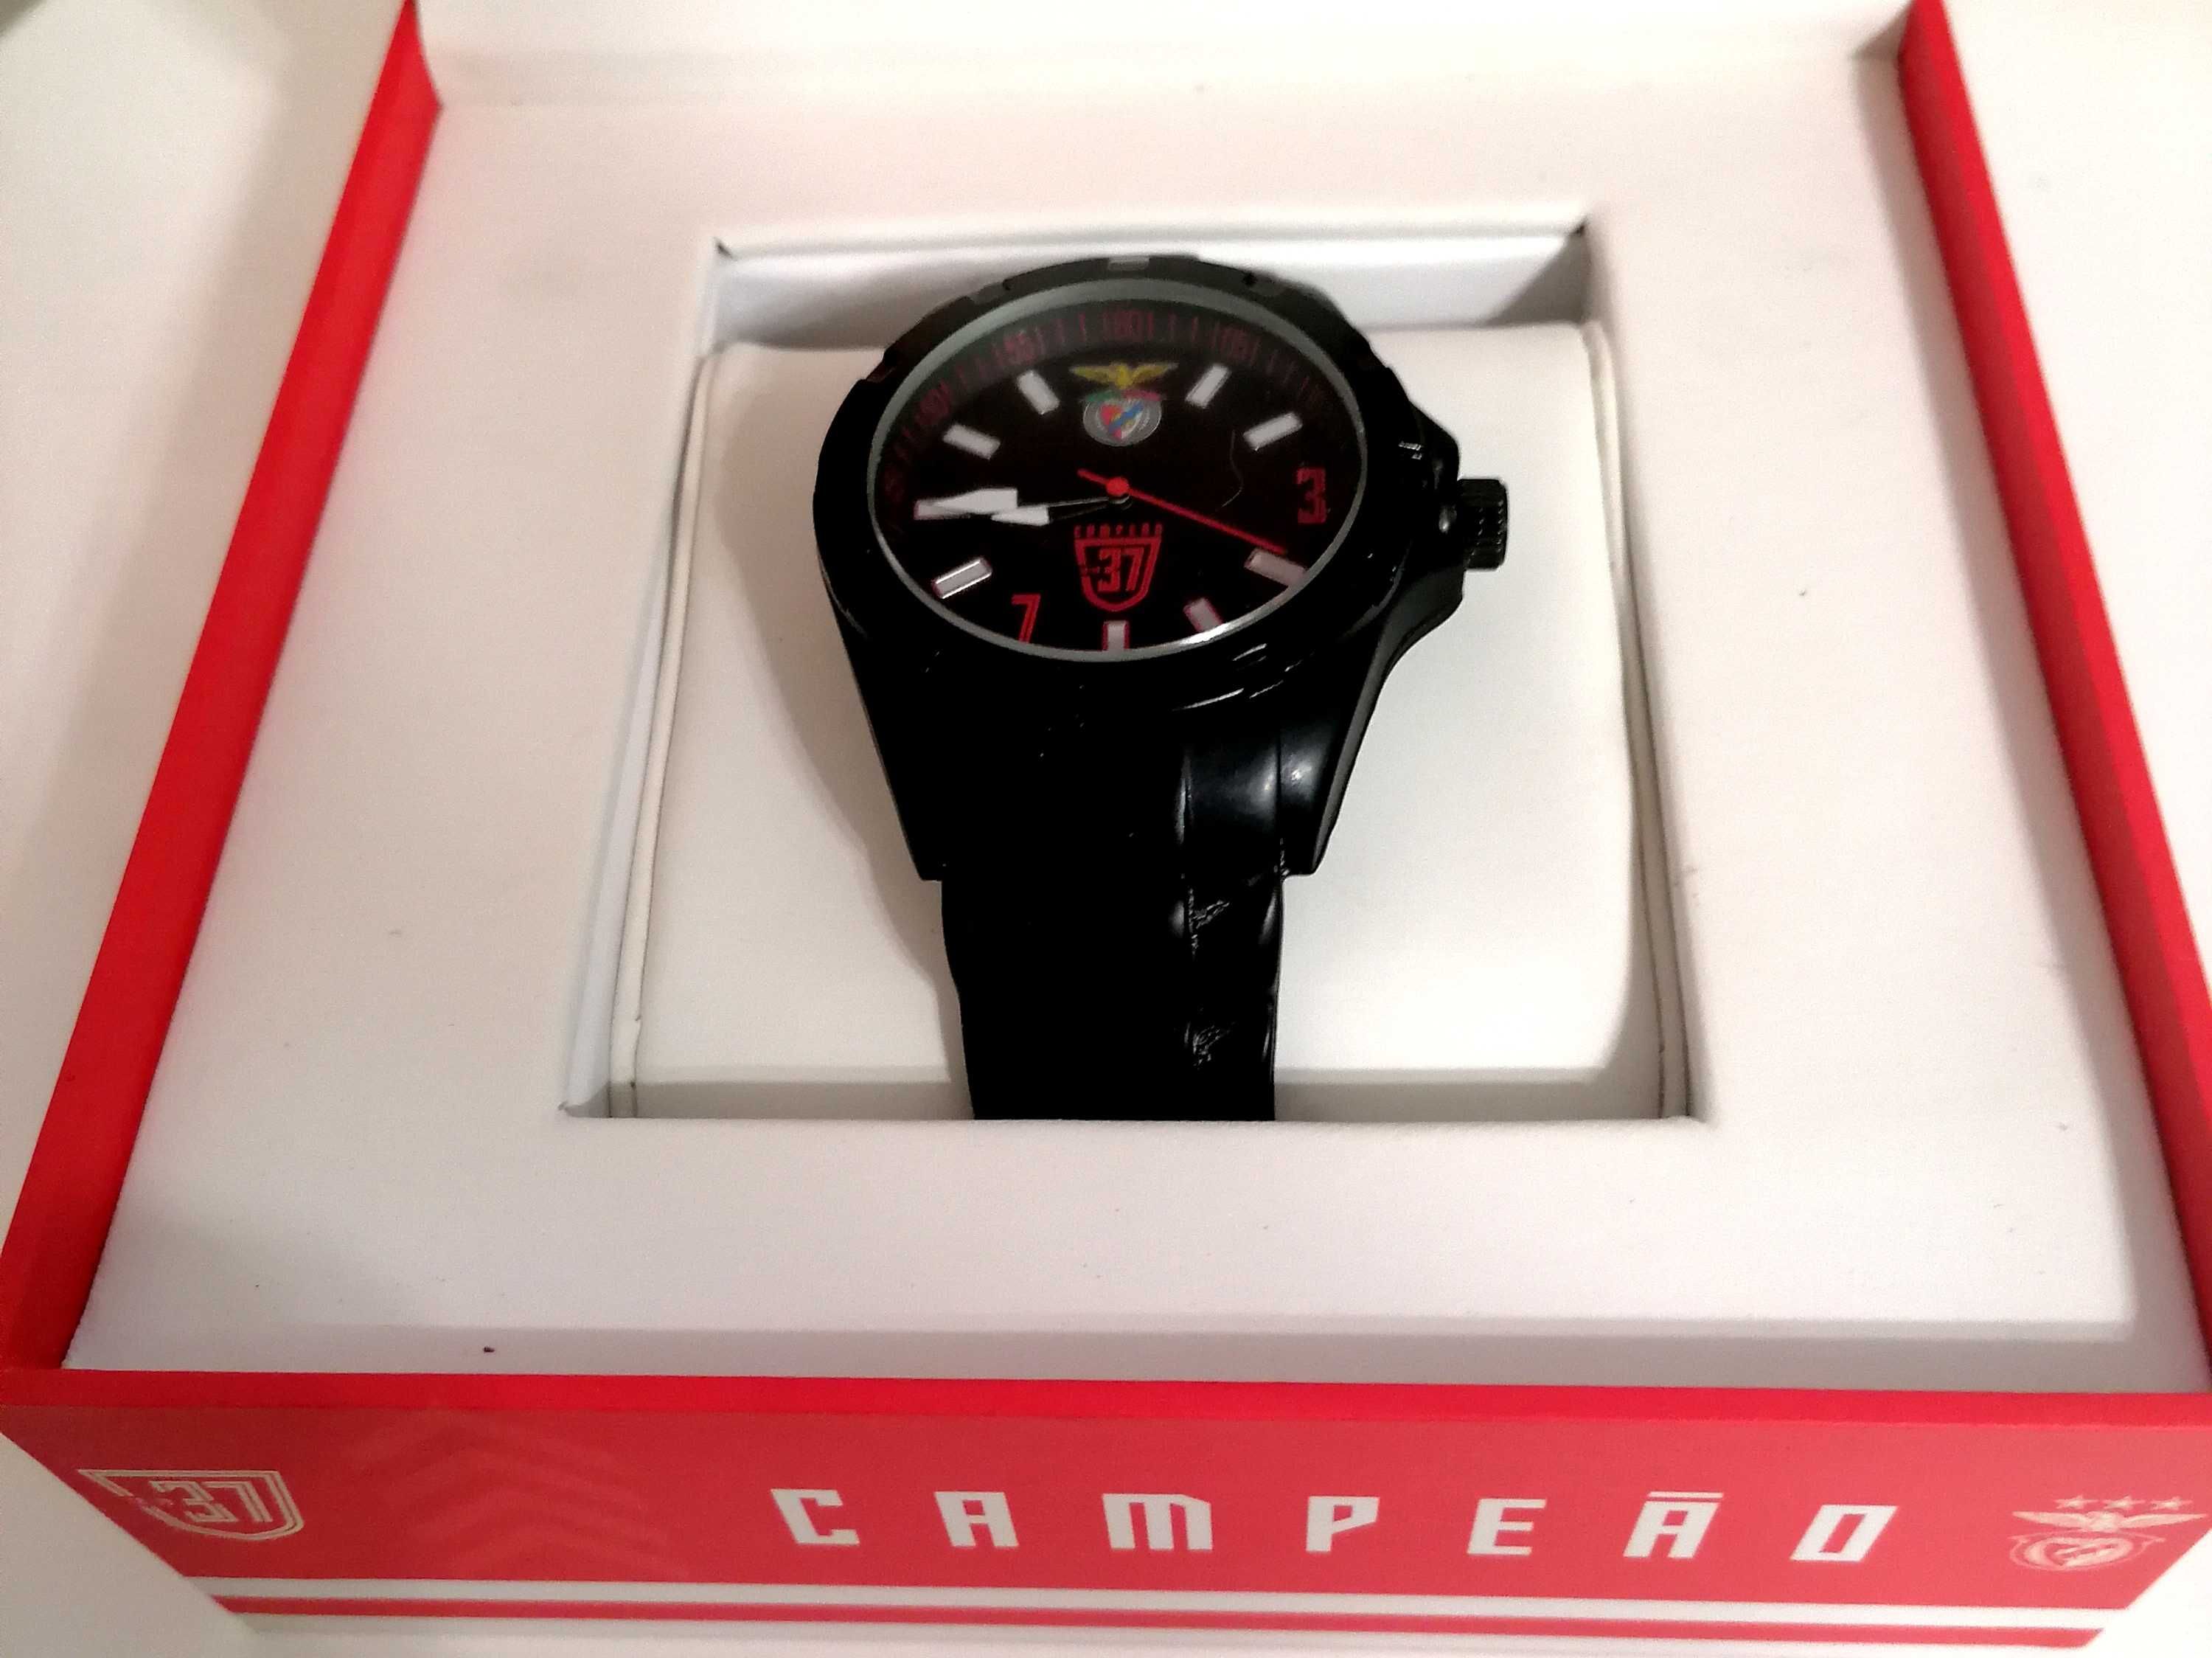 Relógio oficial Benfica (com estojo)